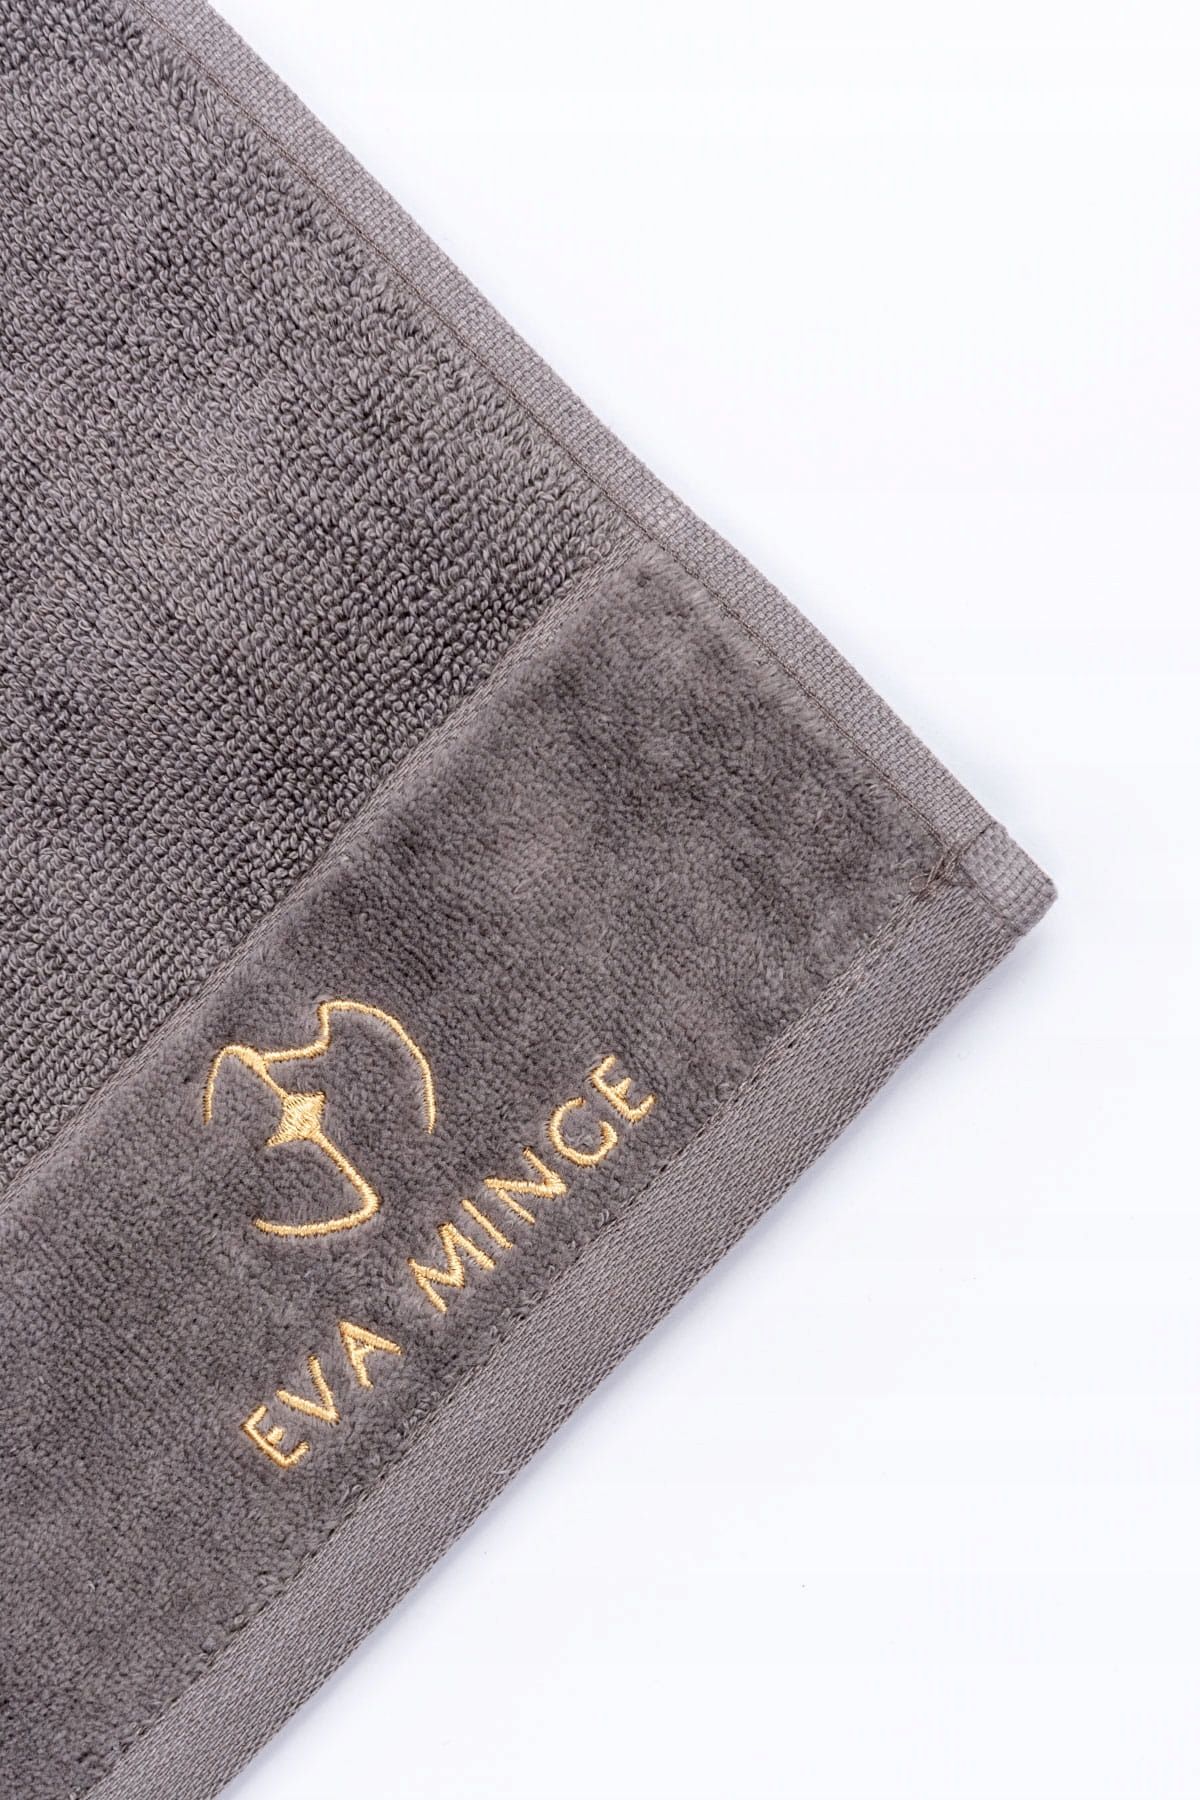 Ręcznik Gaja 30x50 szary frotte 550 g/m2 frotte Eva Minge